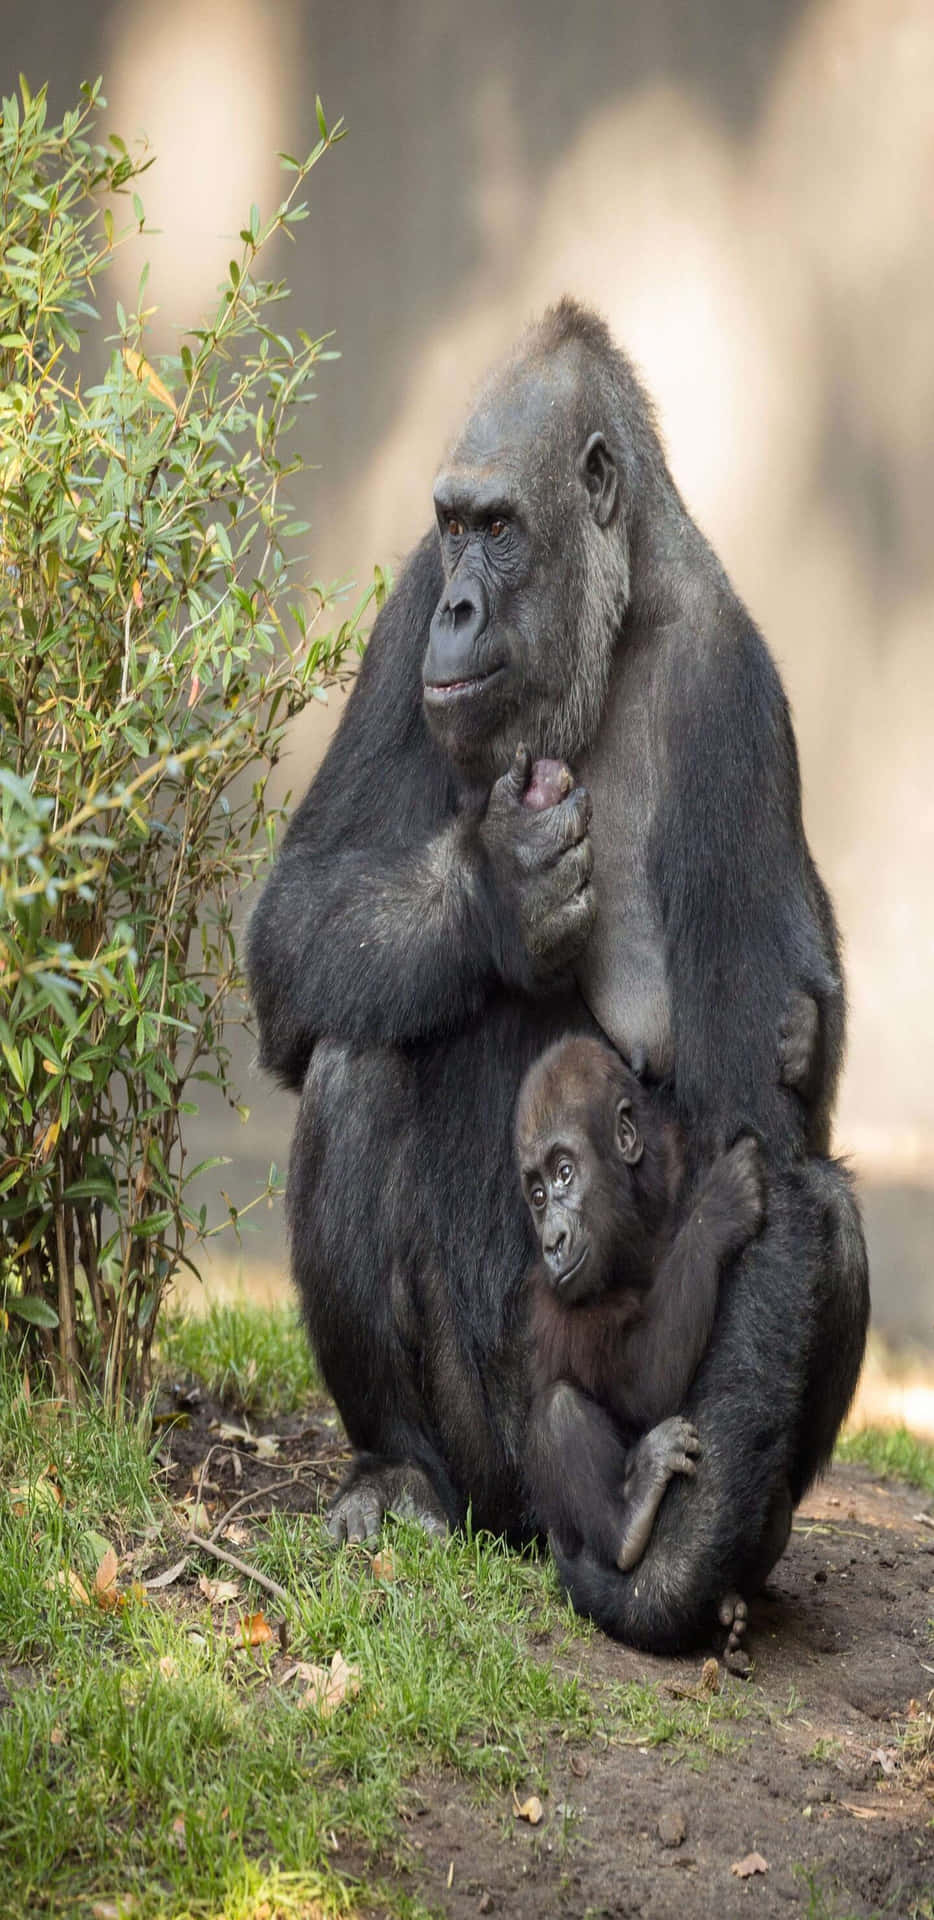 Fondode Pantalla De Una Mamá Animal Llevando A Su Bebé Gorila En Un Google Pixel 3 Xl.